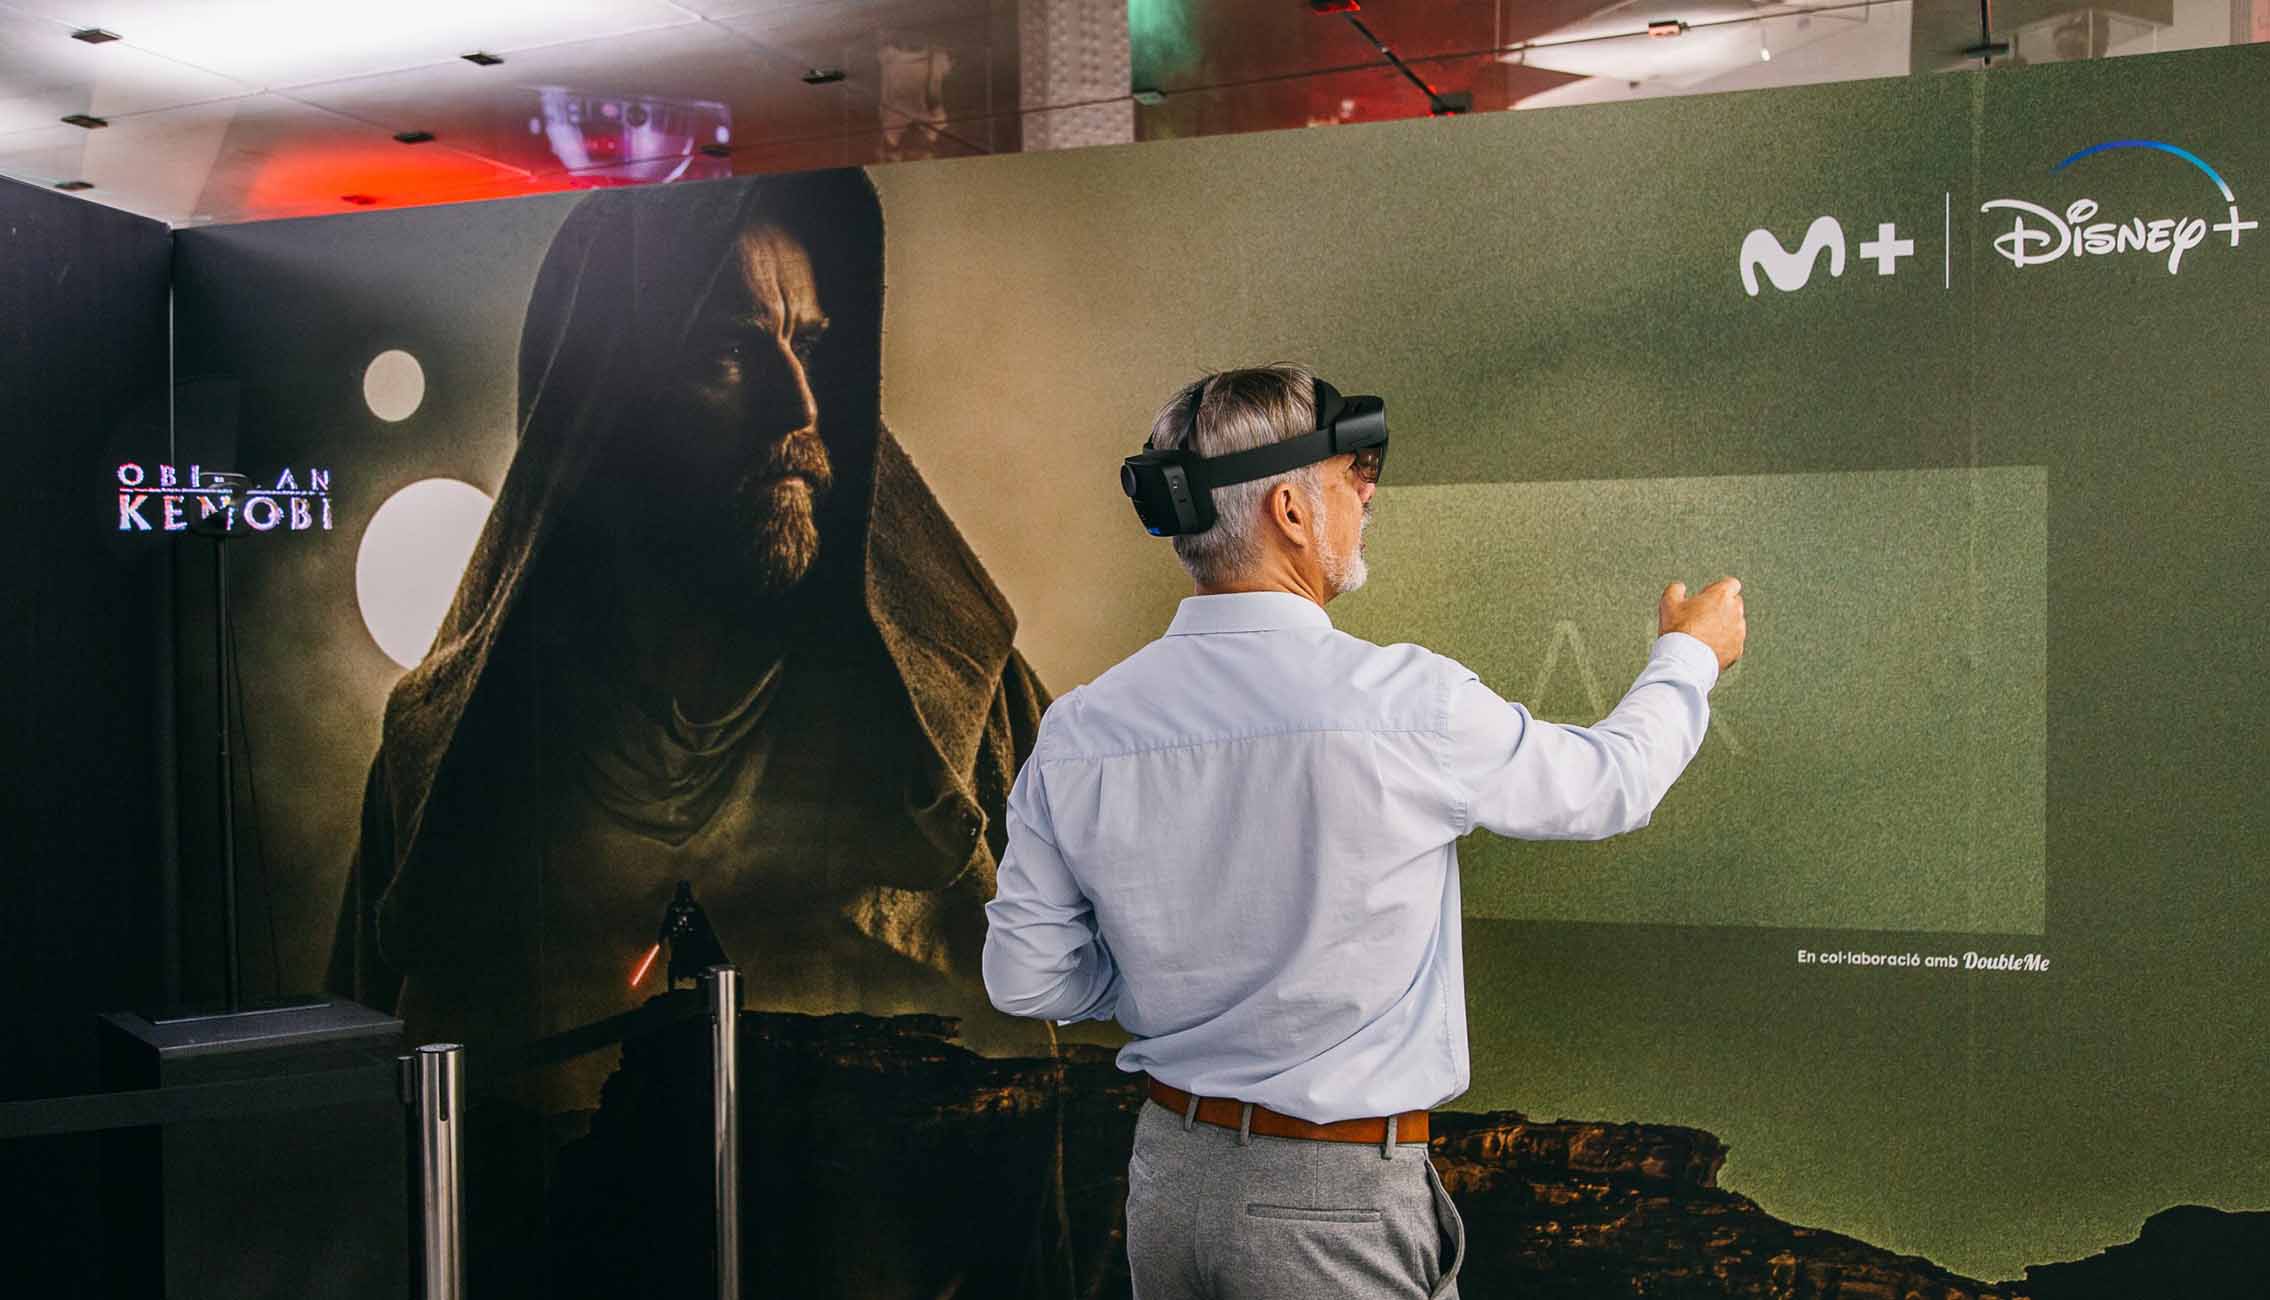 Exposición sobre Star Wars con motivo de la llegada de Obi-Wan Kenobi